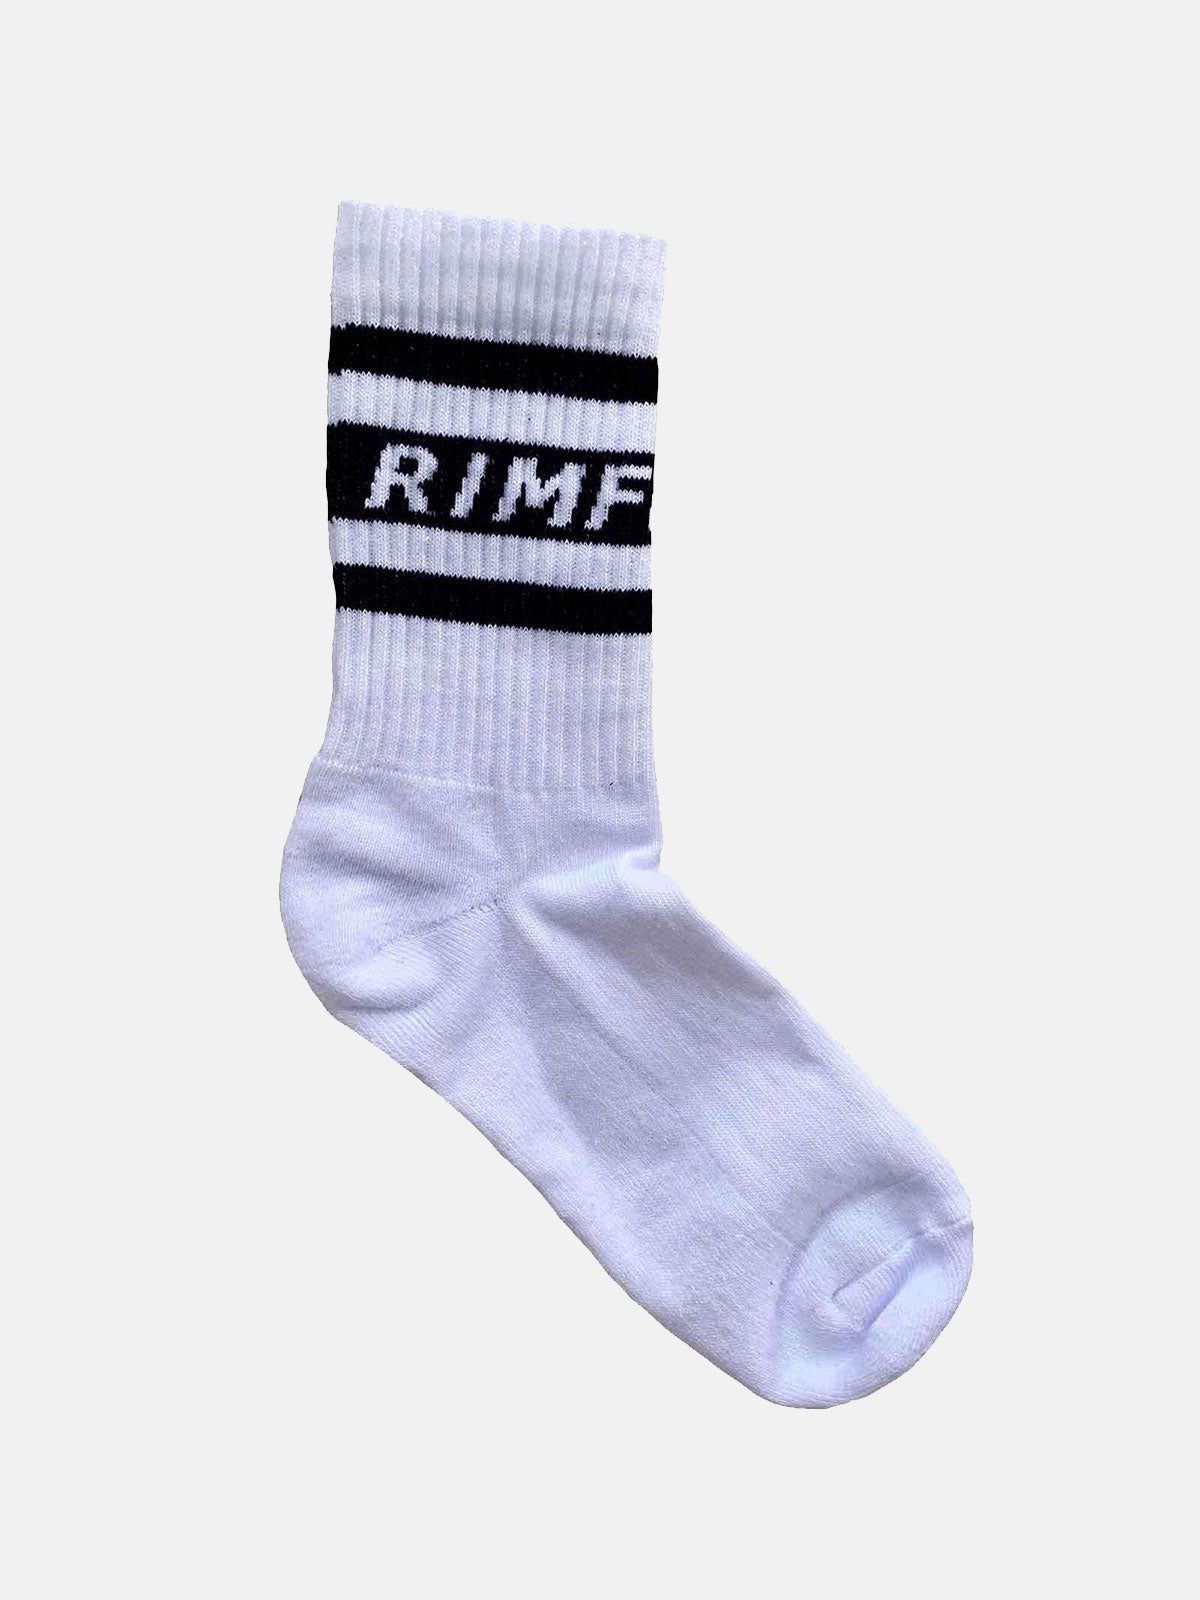 Classic Crew Socks - RIMFROST®